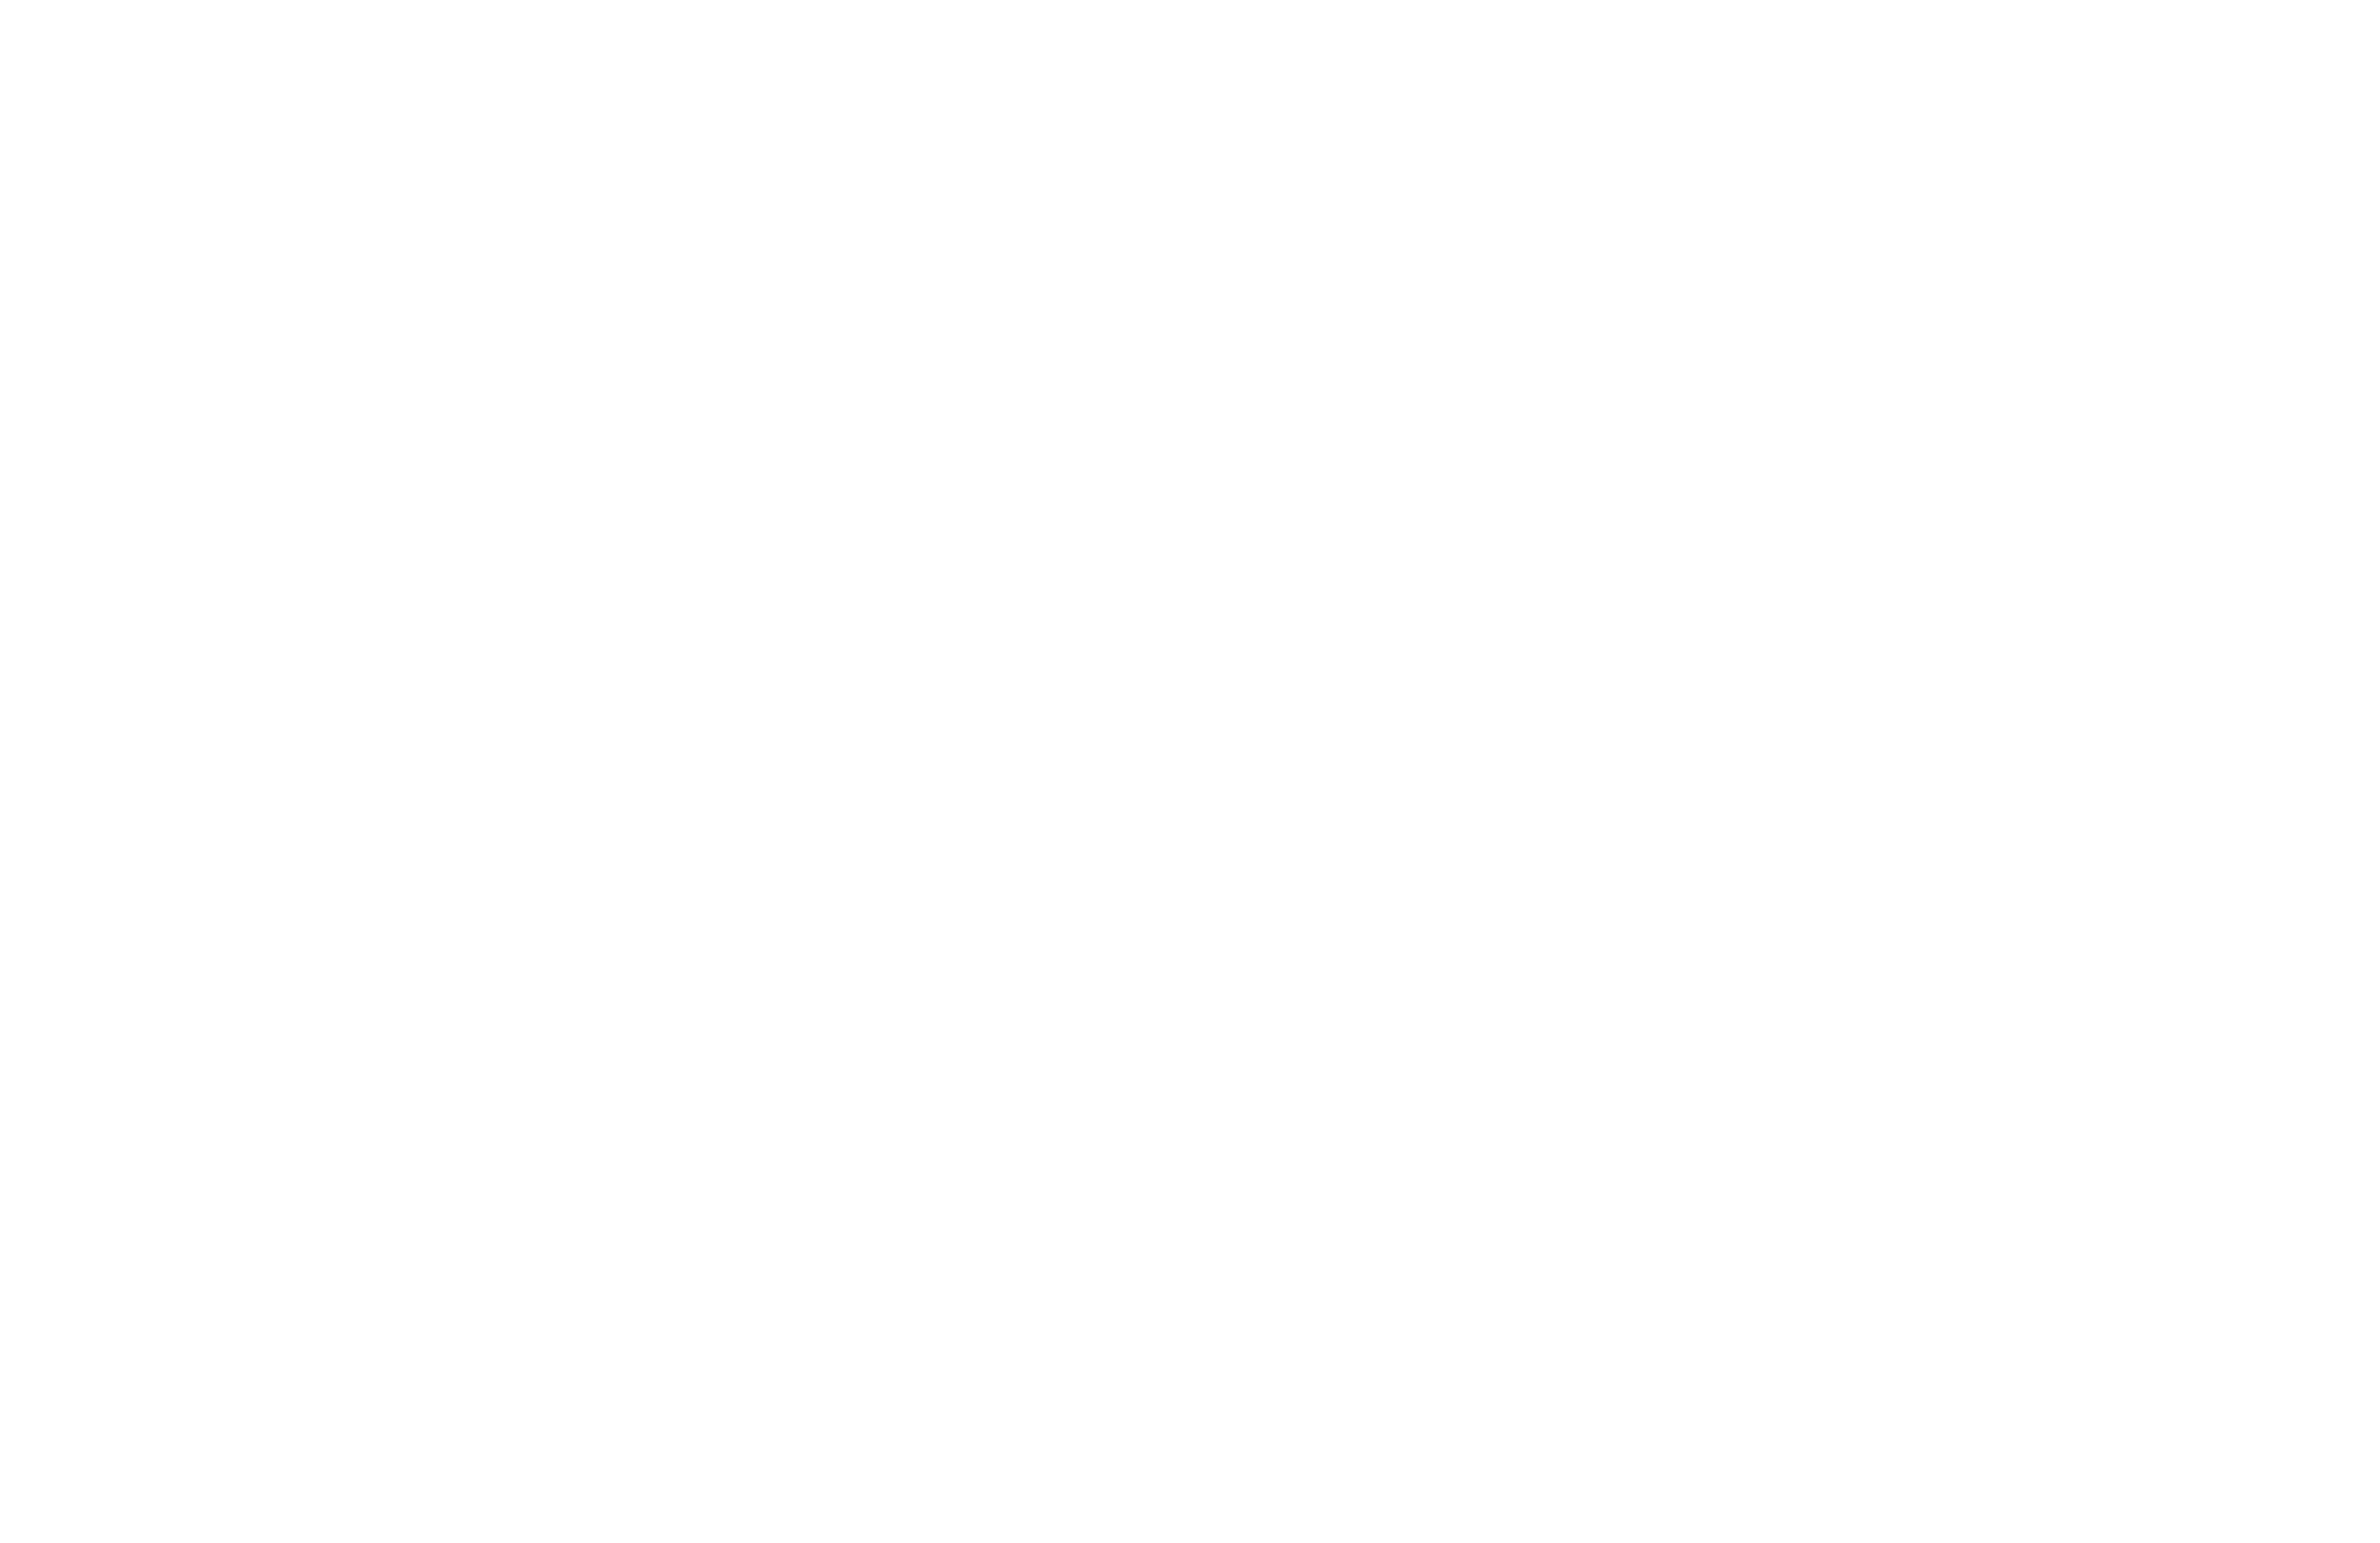 Restaurante Los Jarales